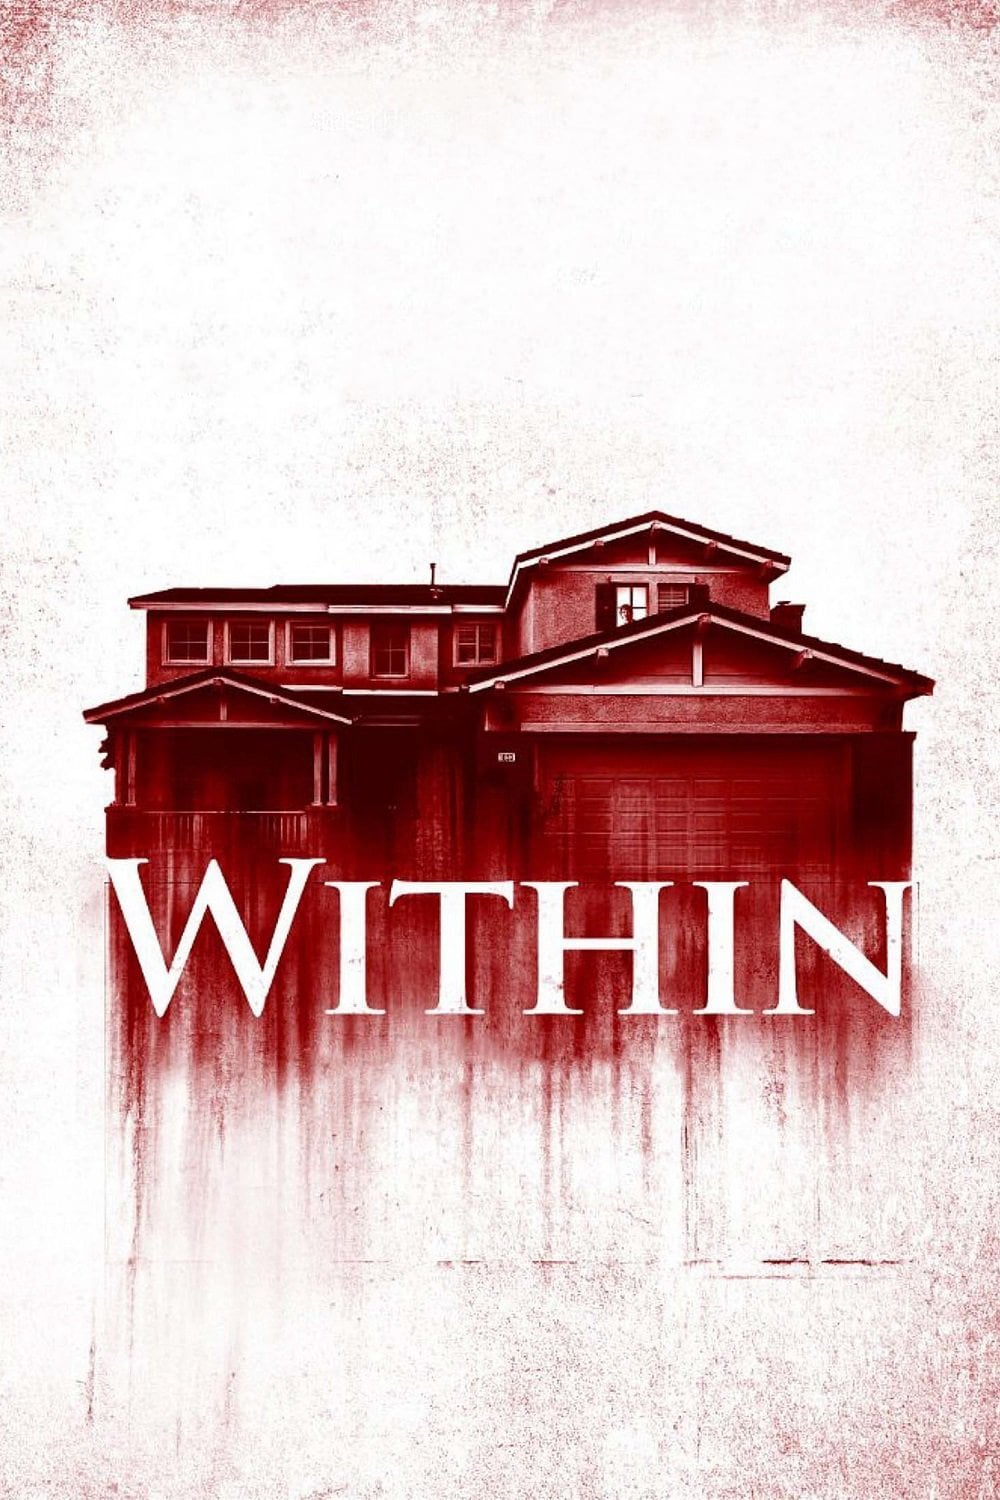 Plakat von "Within"